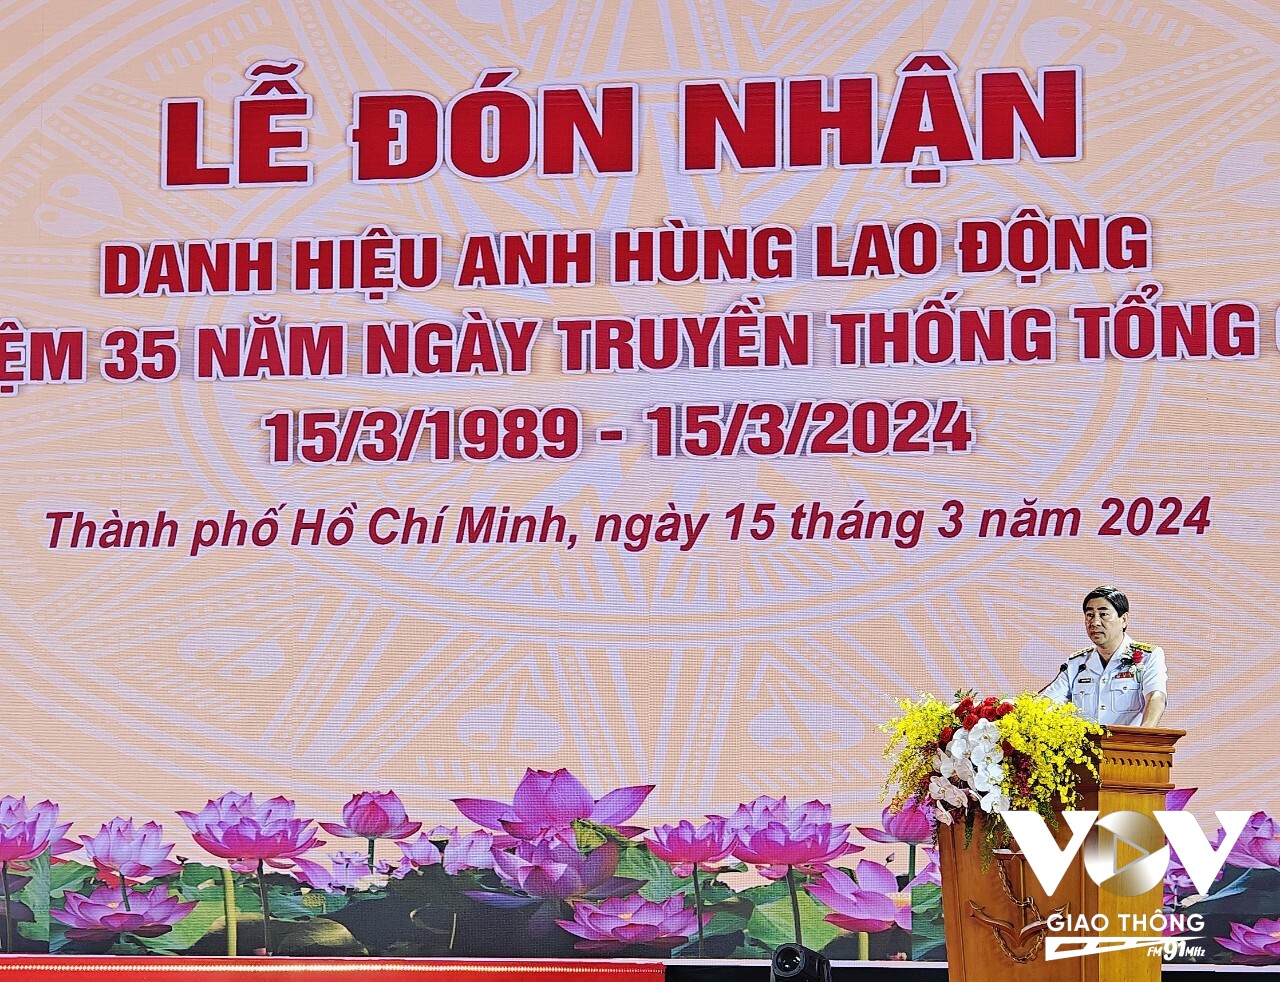 Đại tá Ngô Minh Thuấn – Tổng giám đốc Tổng công ty Tân Cảng Sài Gòn